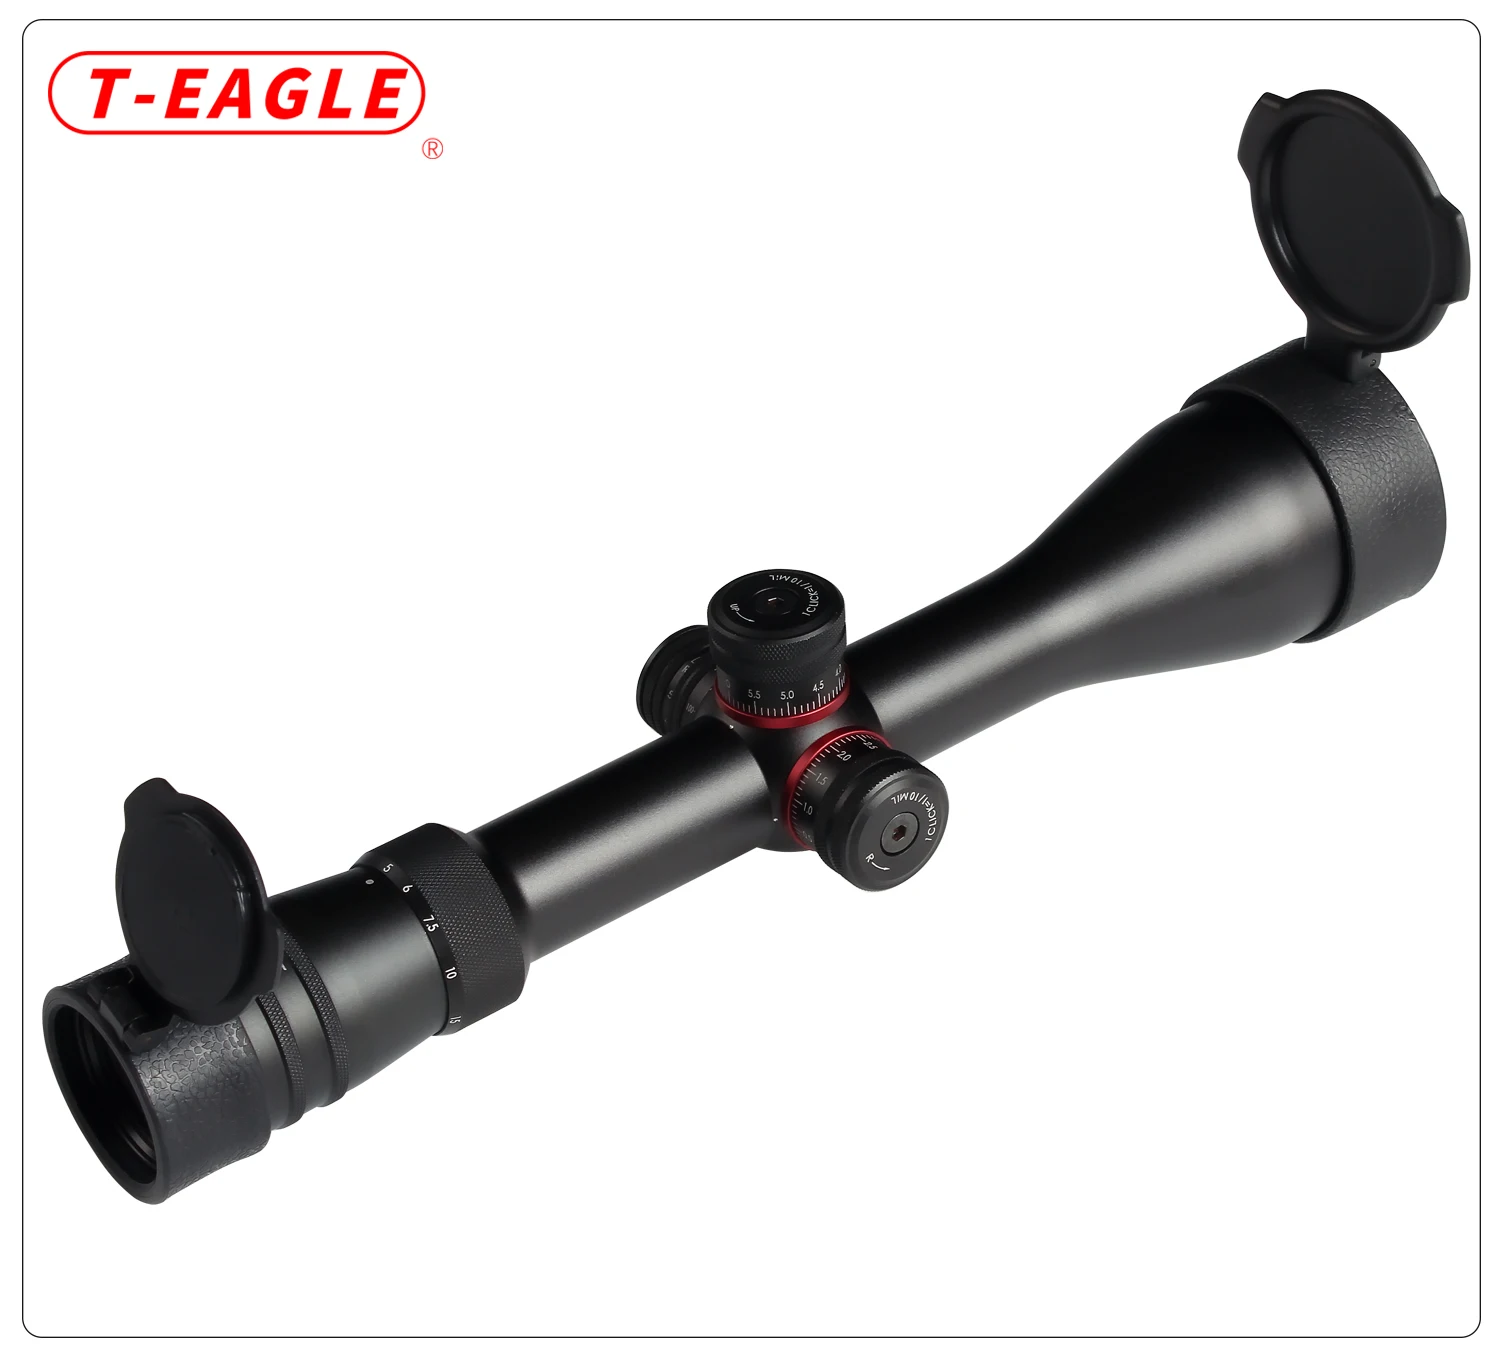 Охота TEAGLE 5-20X50 SFIR Riflescopes Светящееся Стекло травление сетка Боковая регулировка параллакса турреты замок сброс съемки область для PCP